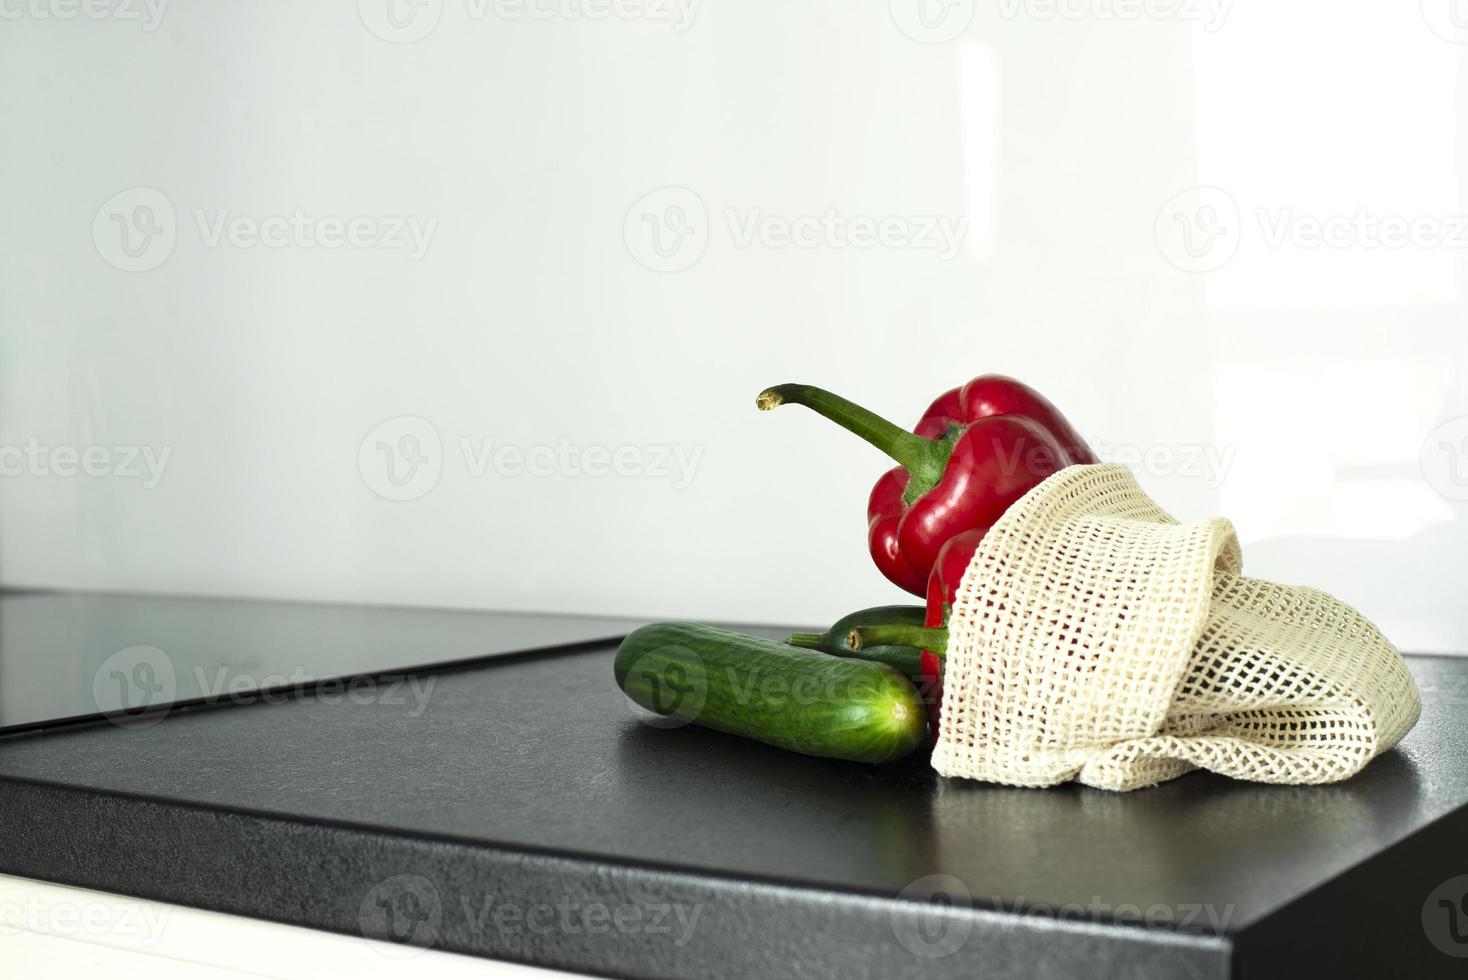 des légumes dans une la grille sur le cuisine tableau. bulgare poivre et concombres. la grille pour des légumes. photo